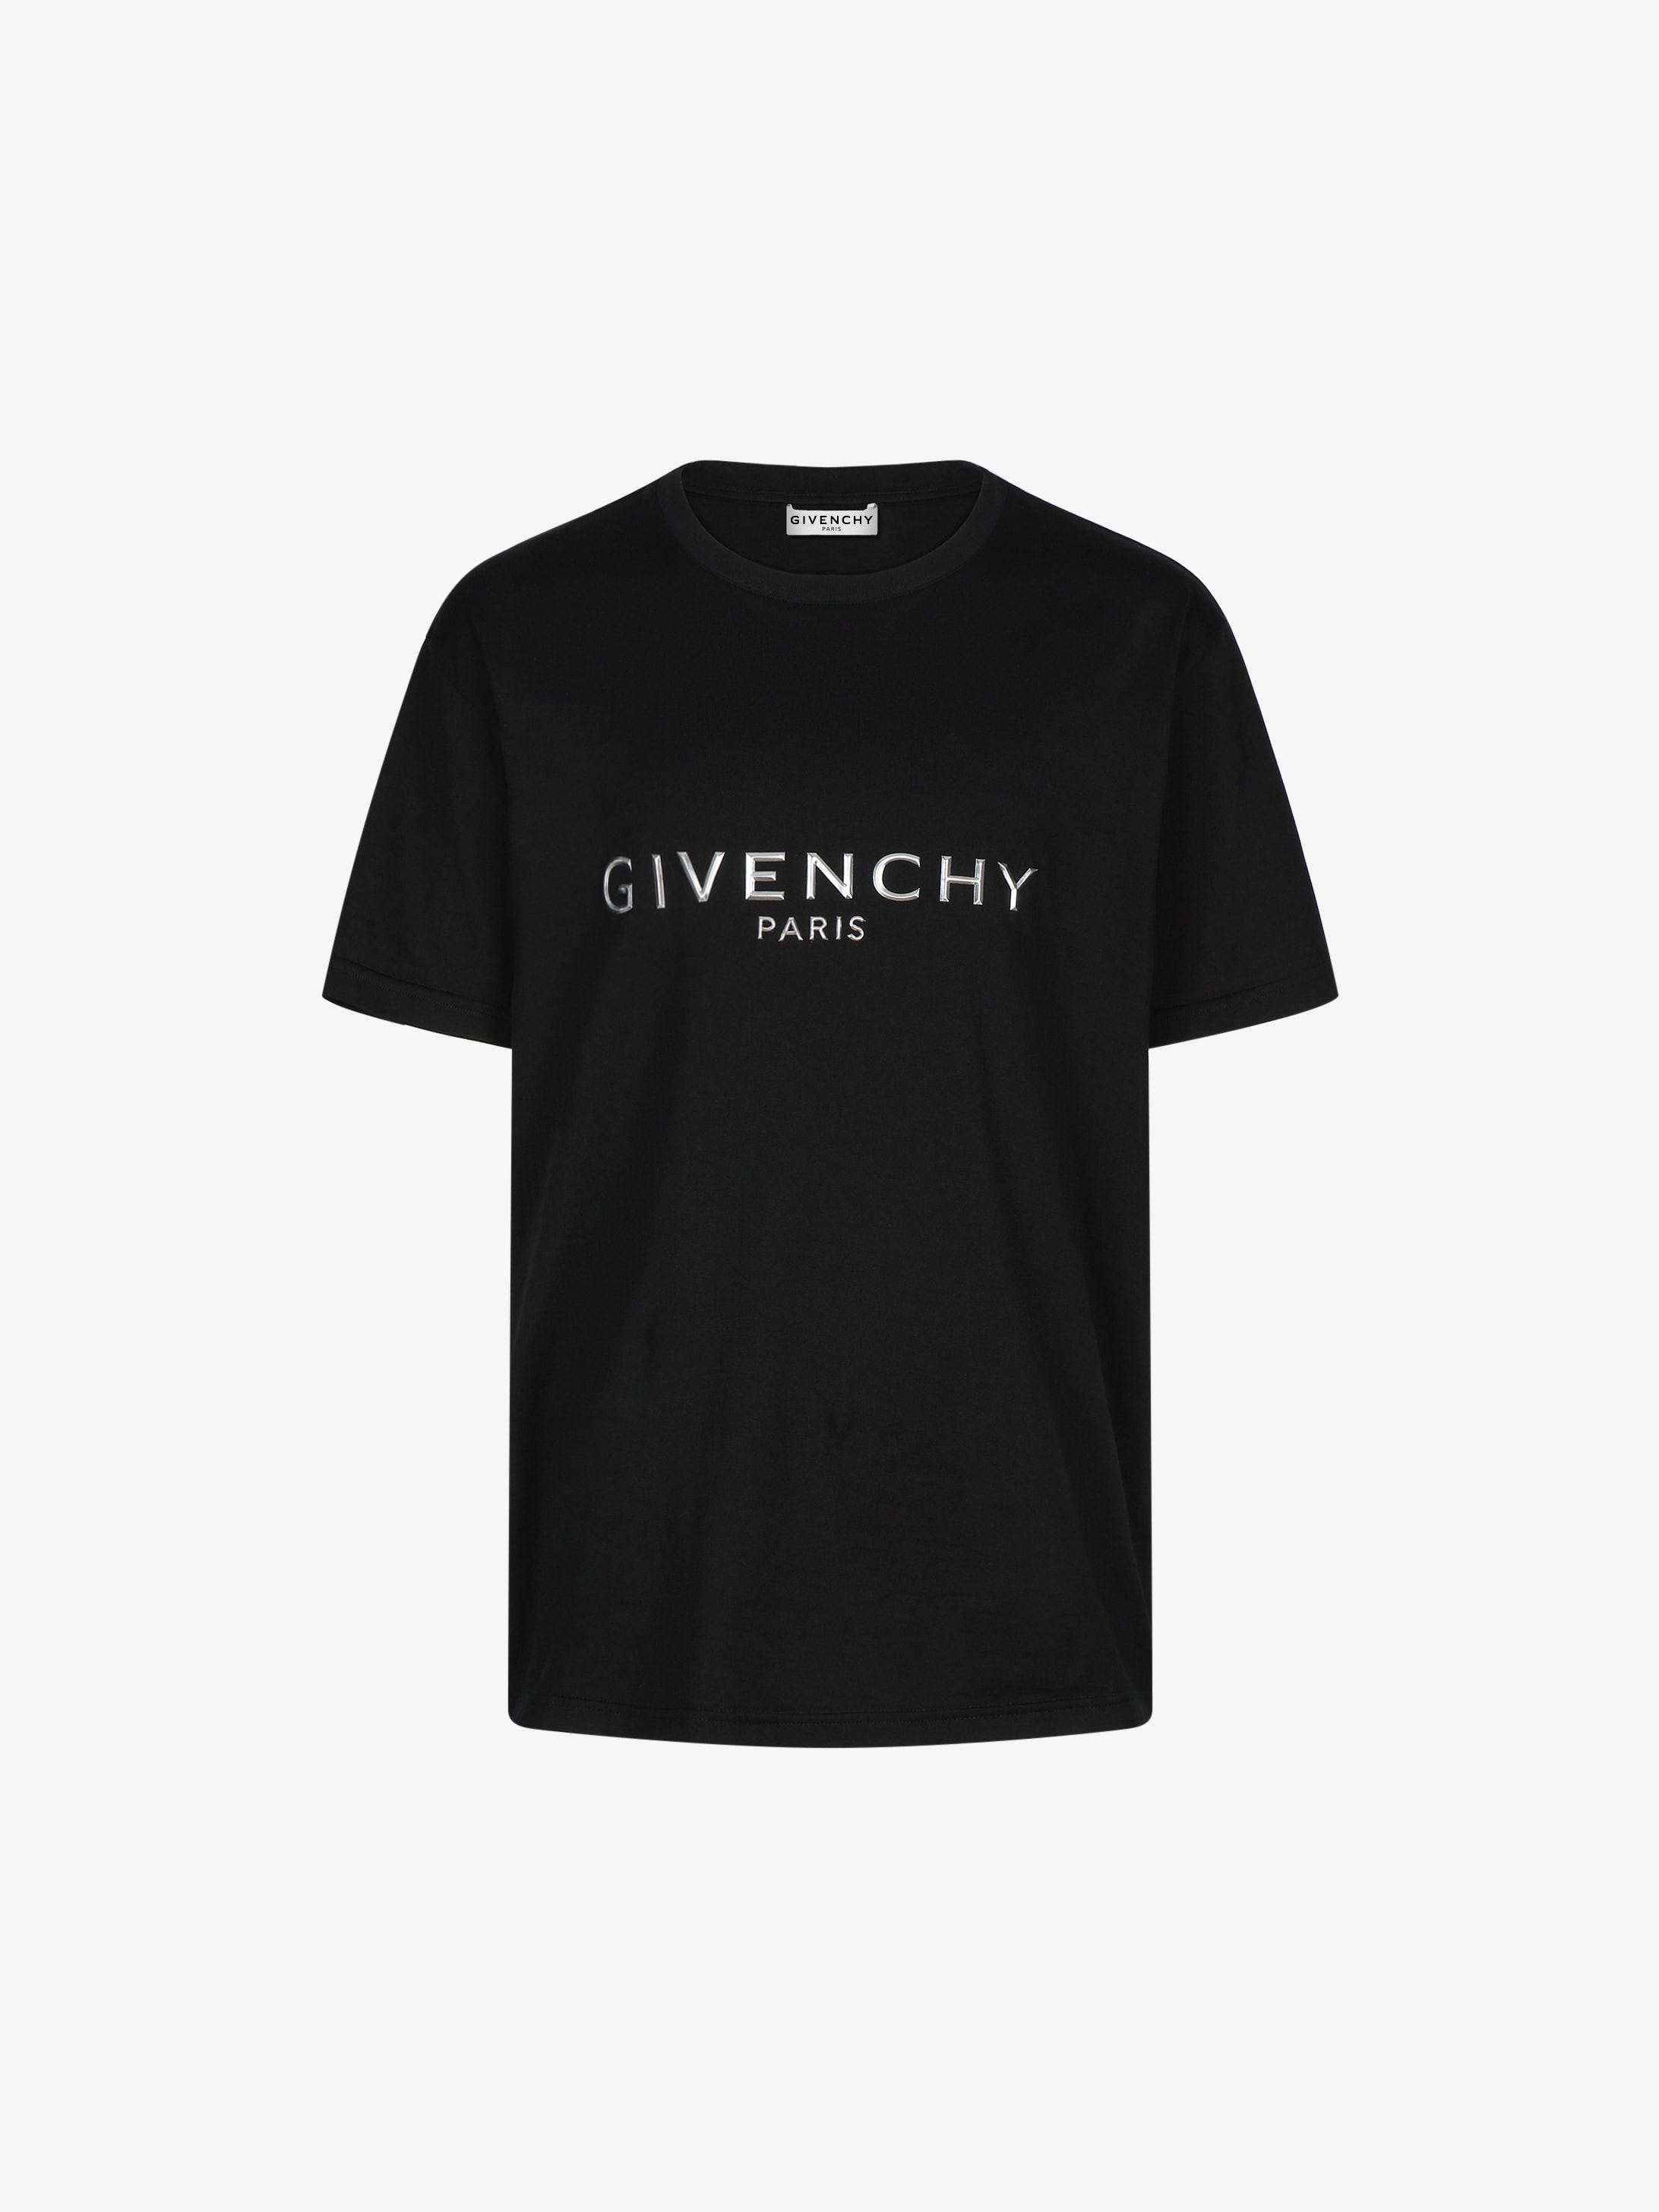 givenchy paris shirts